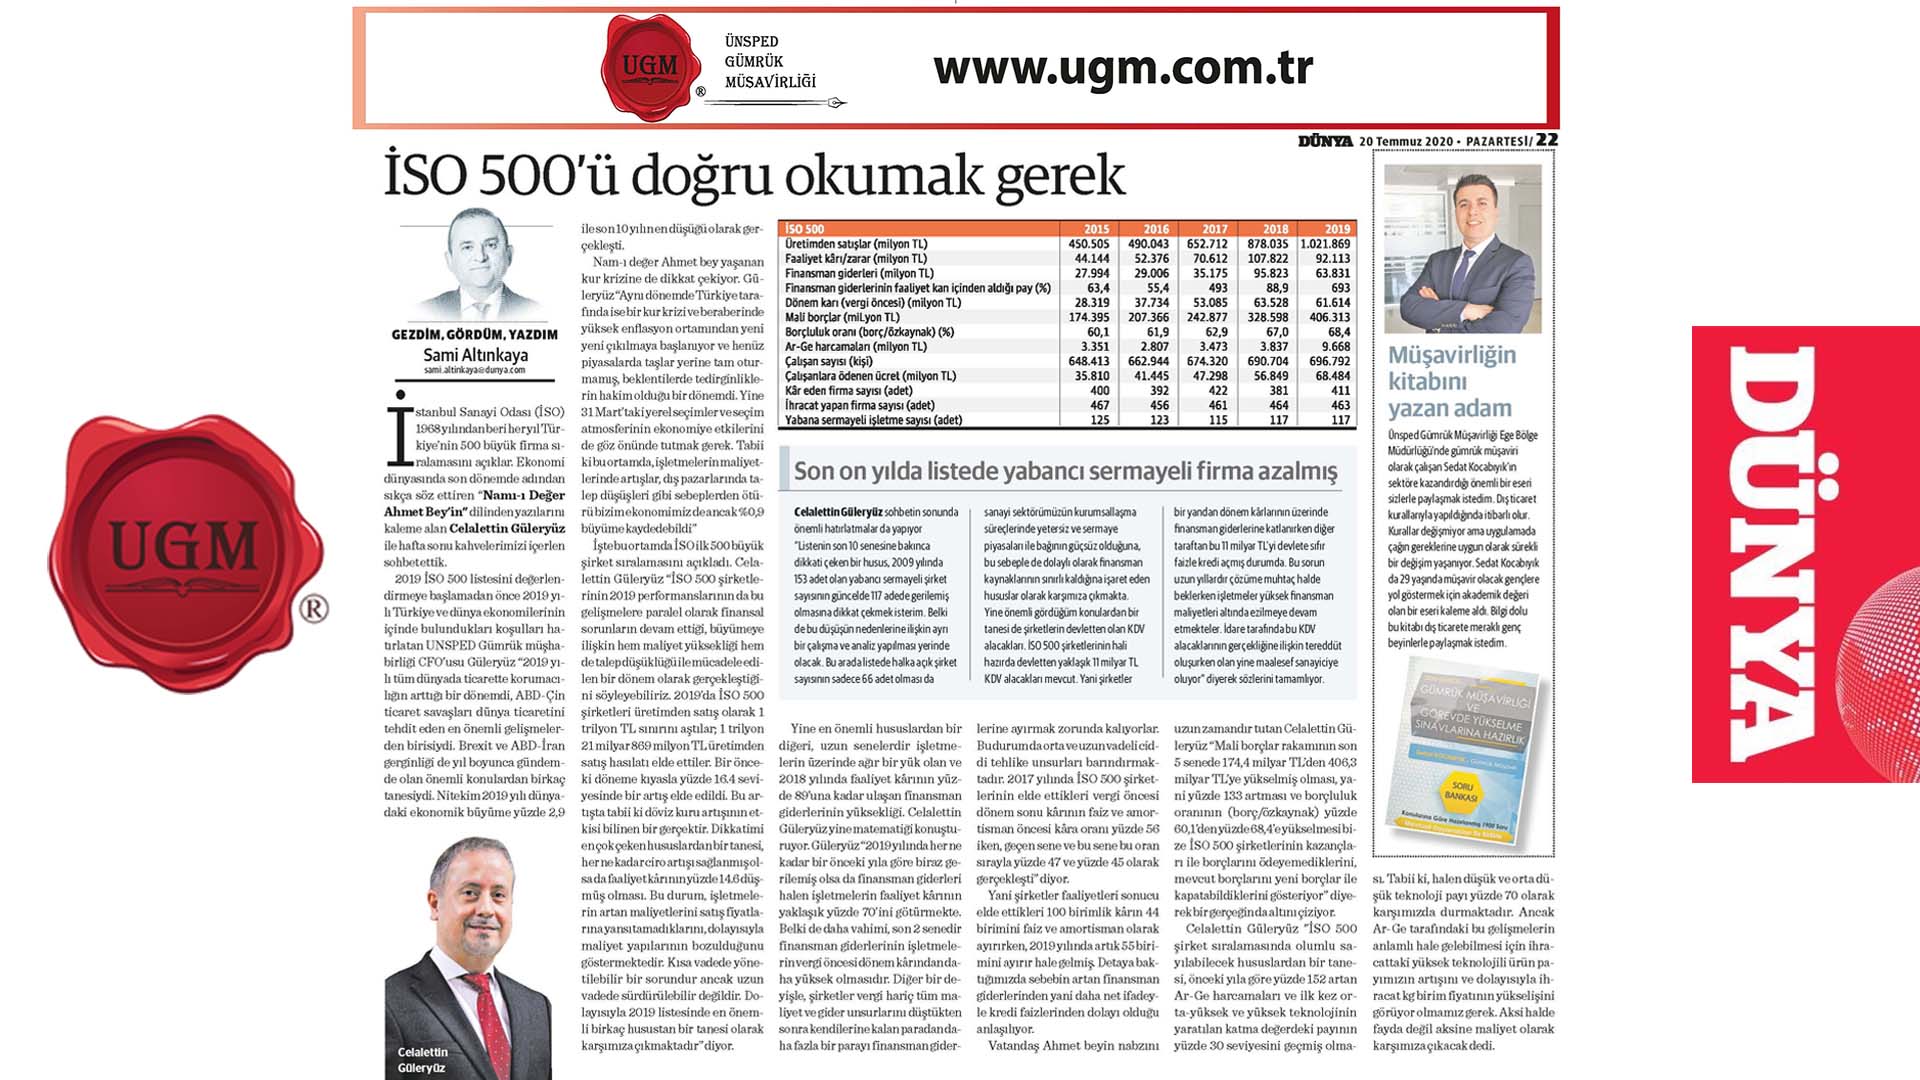 UGM Kurumsal İletişim Direktörümüz Sami Altınkaya'nın "İSO 500'ü doğru okumak gerek" başlıklı yazısı, 20.07.2020 tarihinde Dünya Gazetesi'nde yayınlandı.